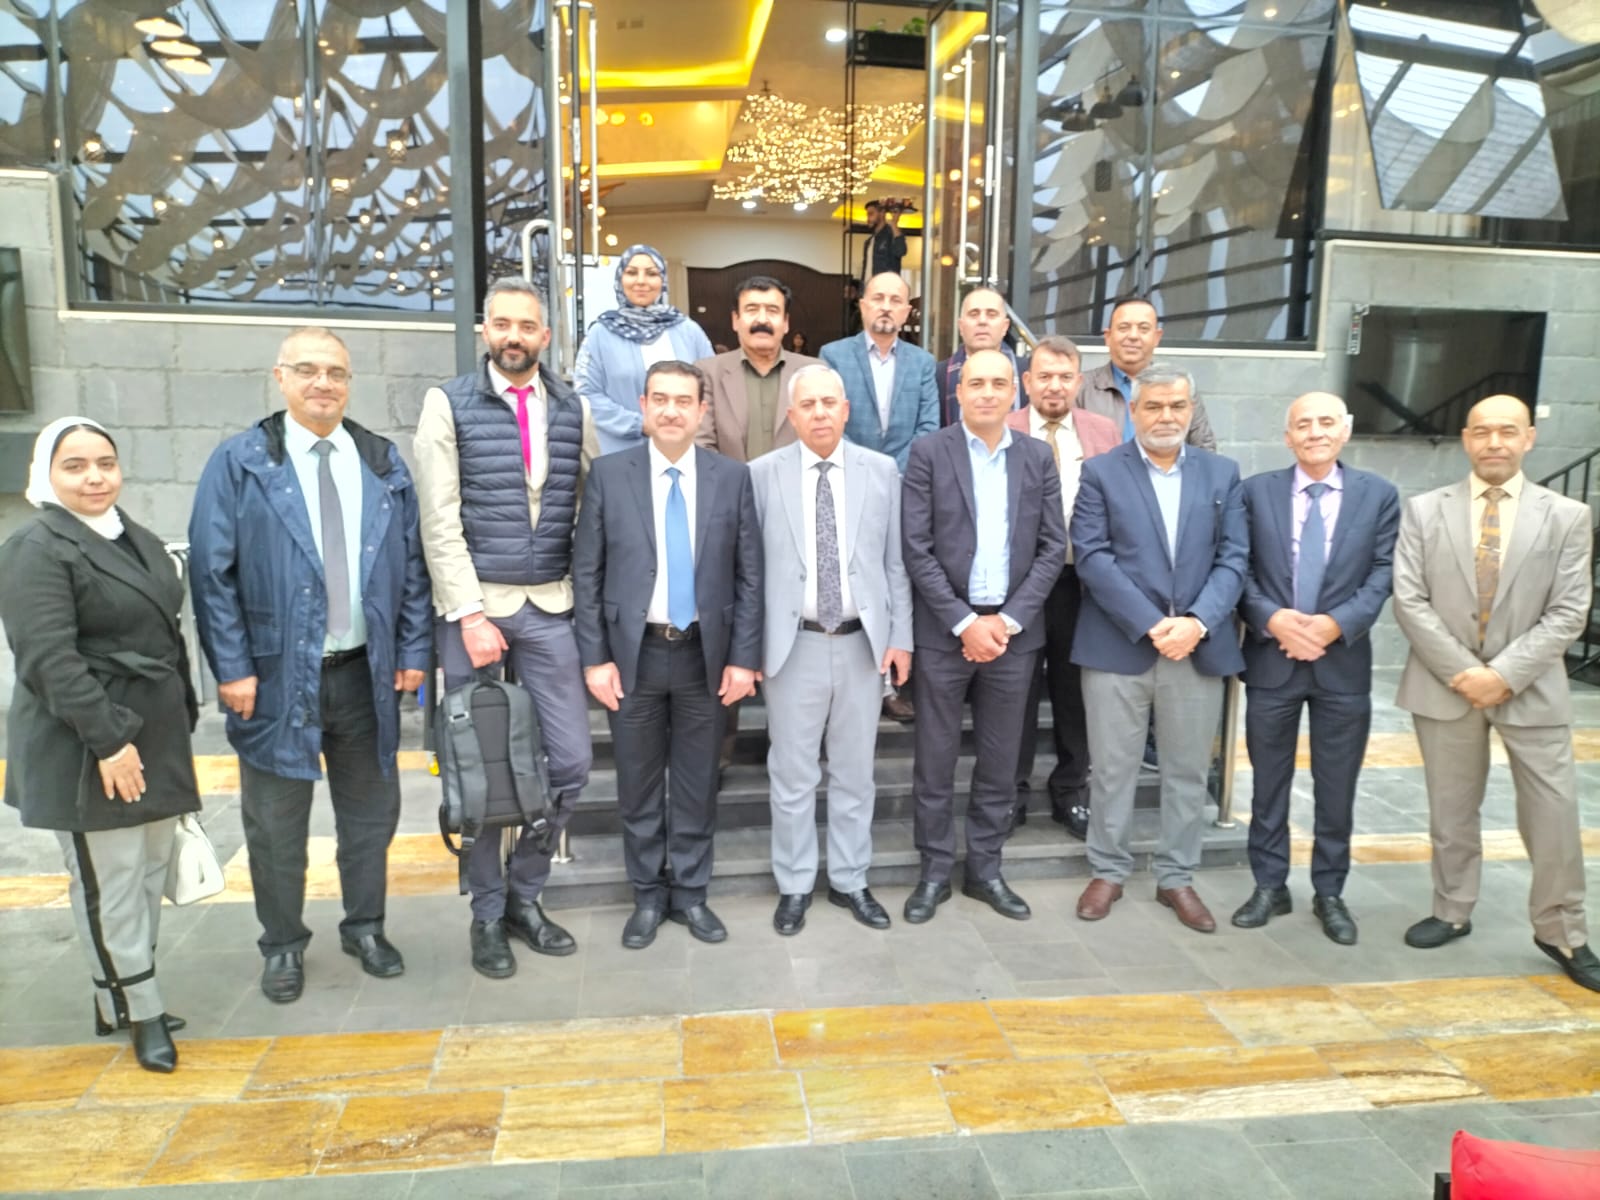 Study Tour sulle Zone Industriali in Giordania per delegazione istituzionale irachena